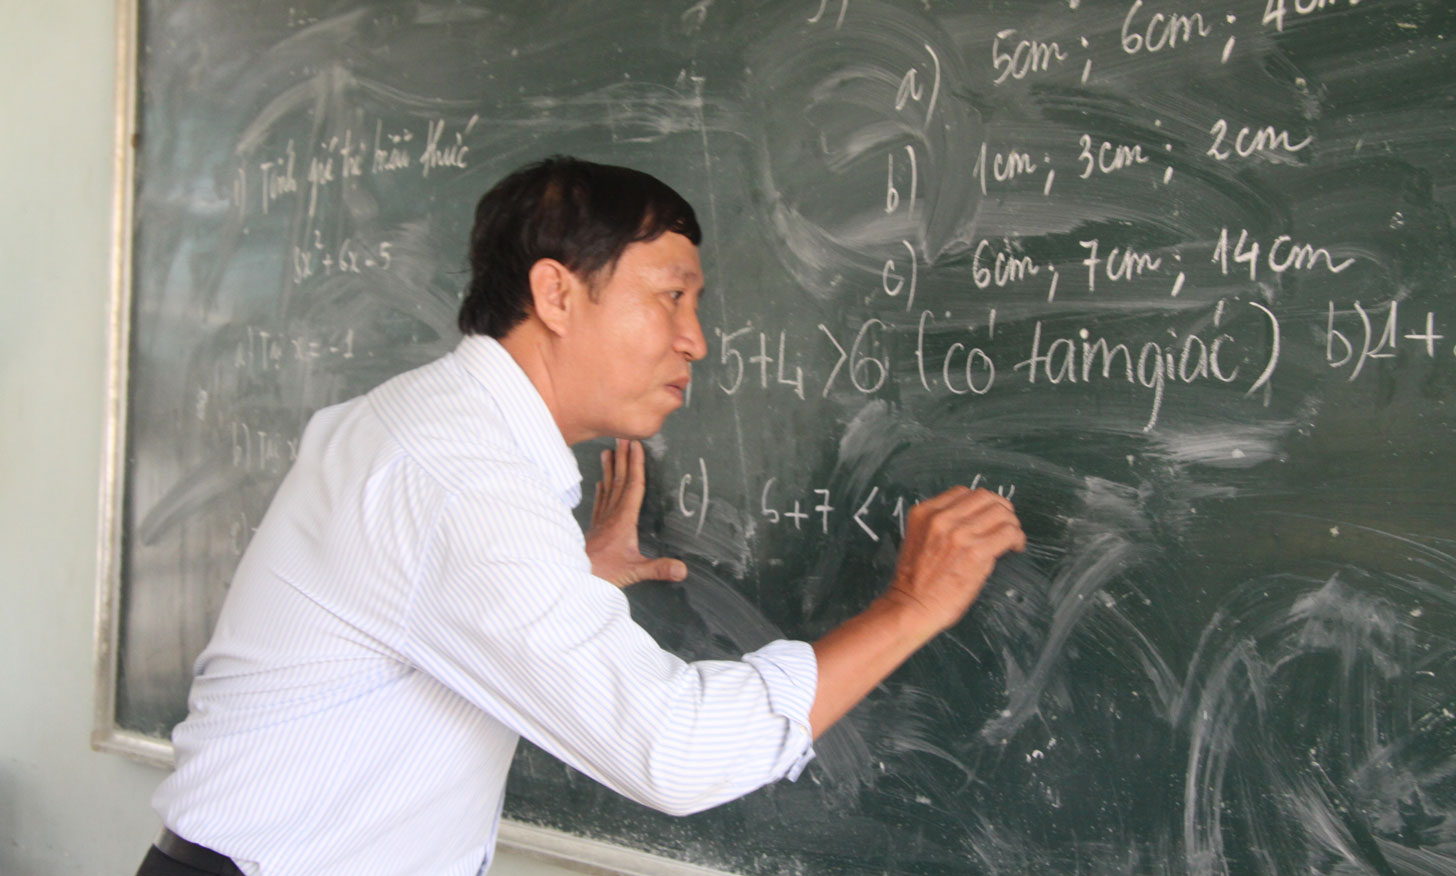 Thầy Nguyễn Thanh Dũng luôn xem học sinh như người thân và làm tròn trách nhiệm người thầy. Trong quá trình dạy, thầy luôn theo sát học sinh, đặc biệt là học sinh yếu kém